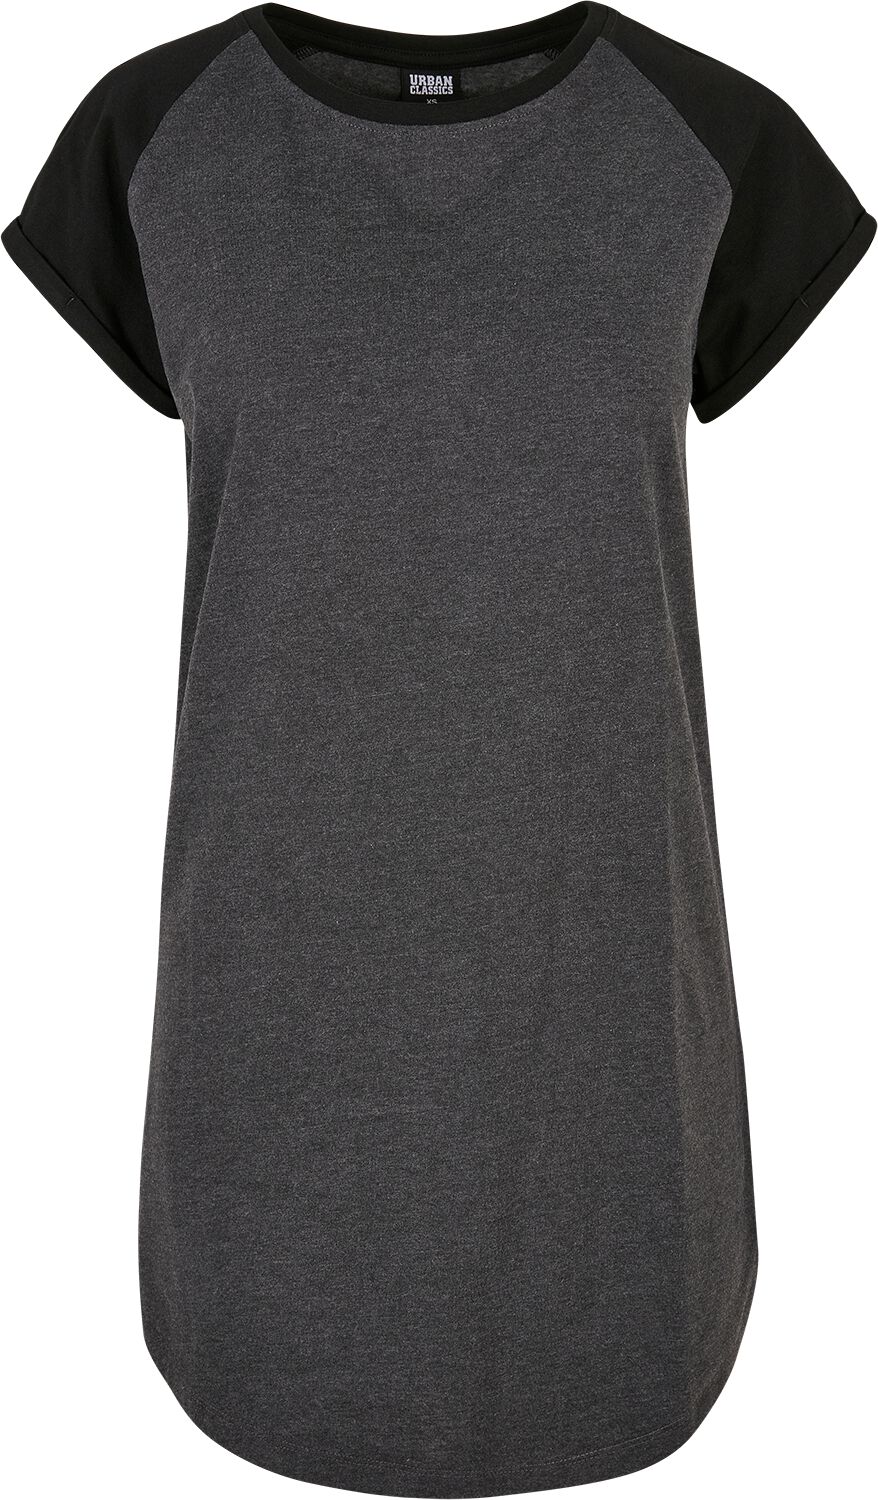 Urban Classics Kurzes Kleid - Ladies Contrast Raglan Tee Dress - S bis 5XL - für Damen - Größe XL - schwarz/grau